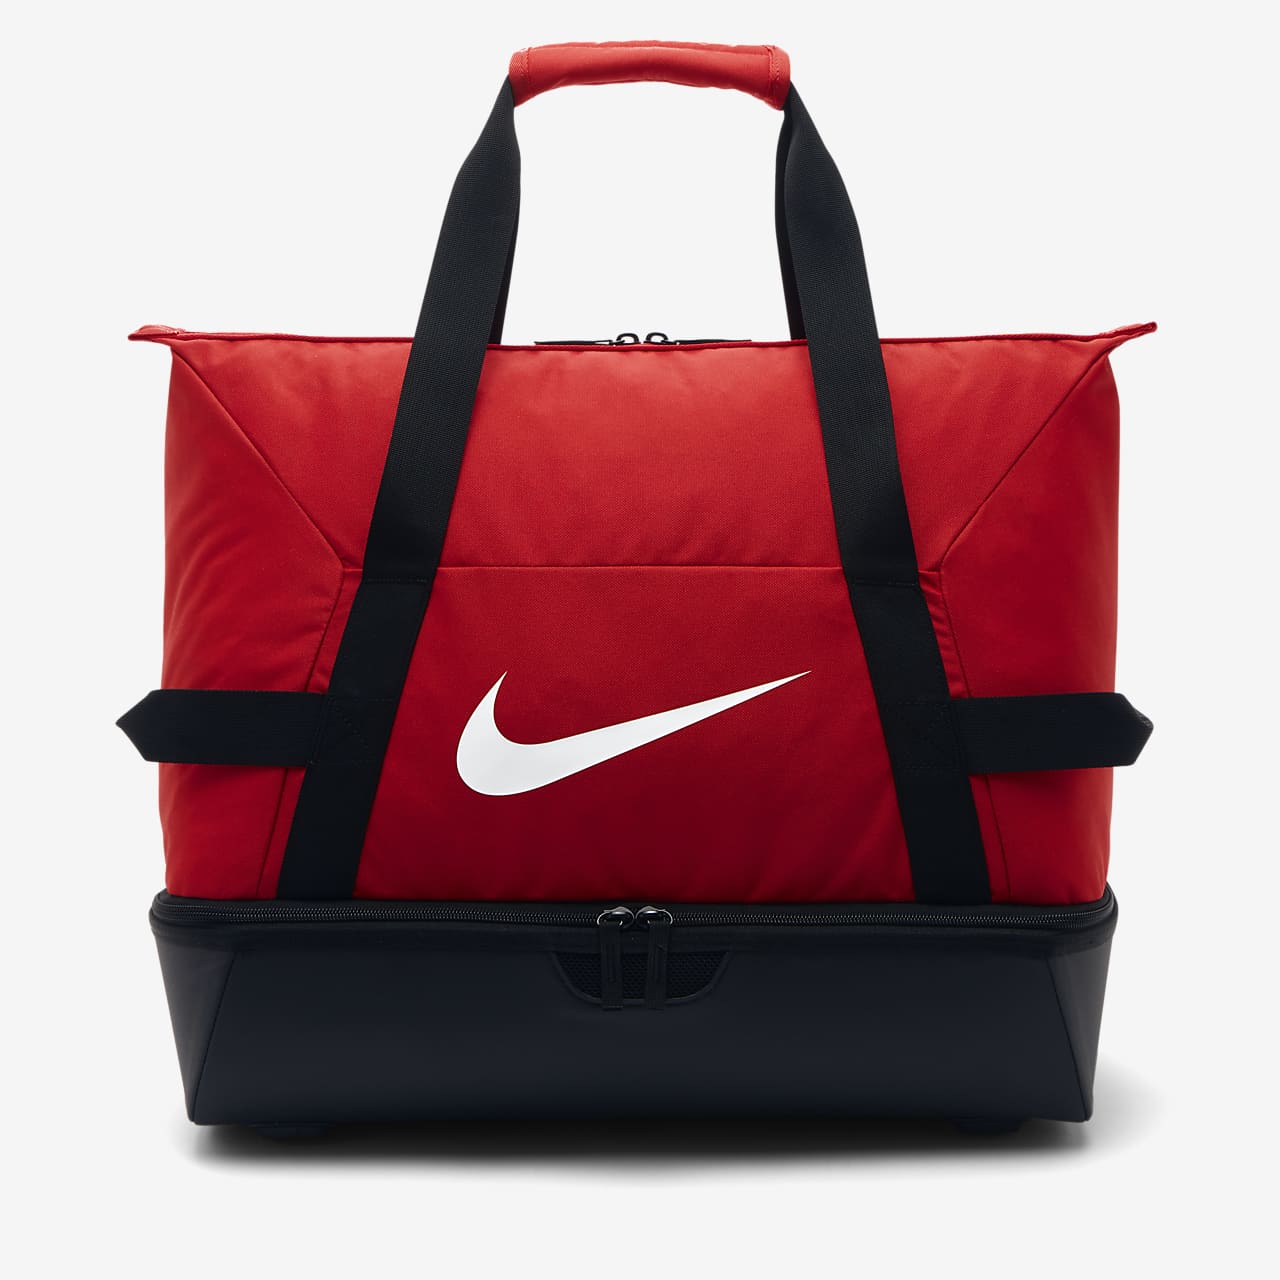 Fotbalová sportovní taška (velikost M) Nike Academy Team Hardcase